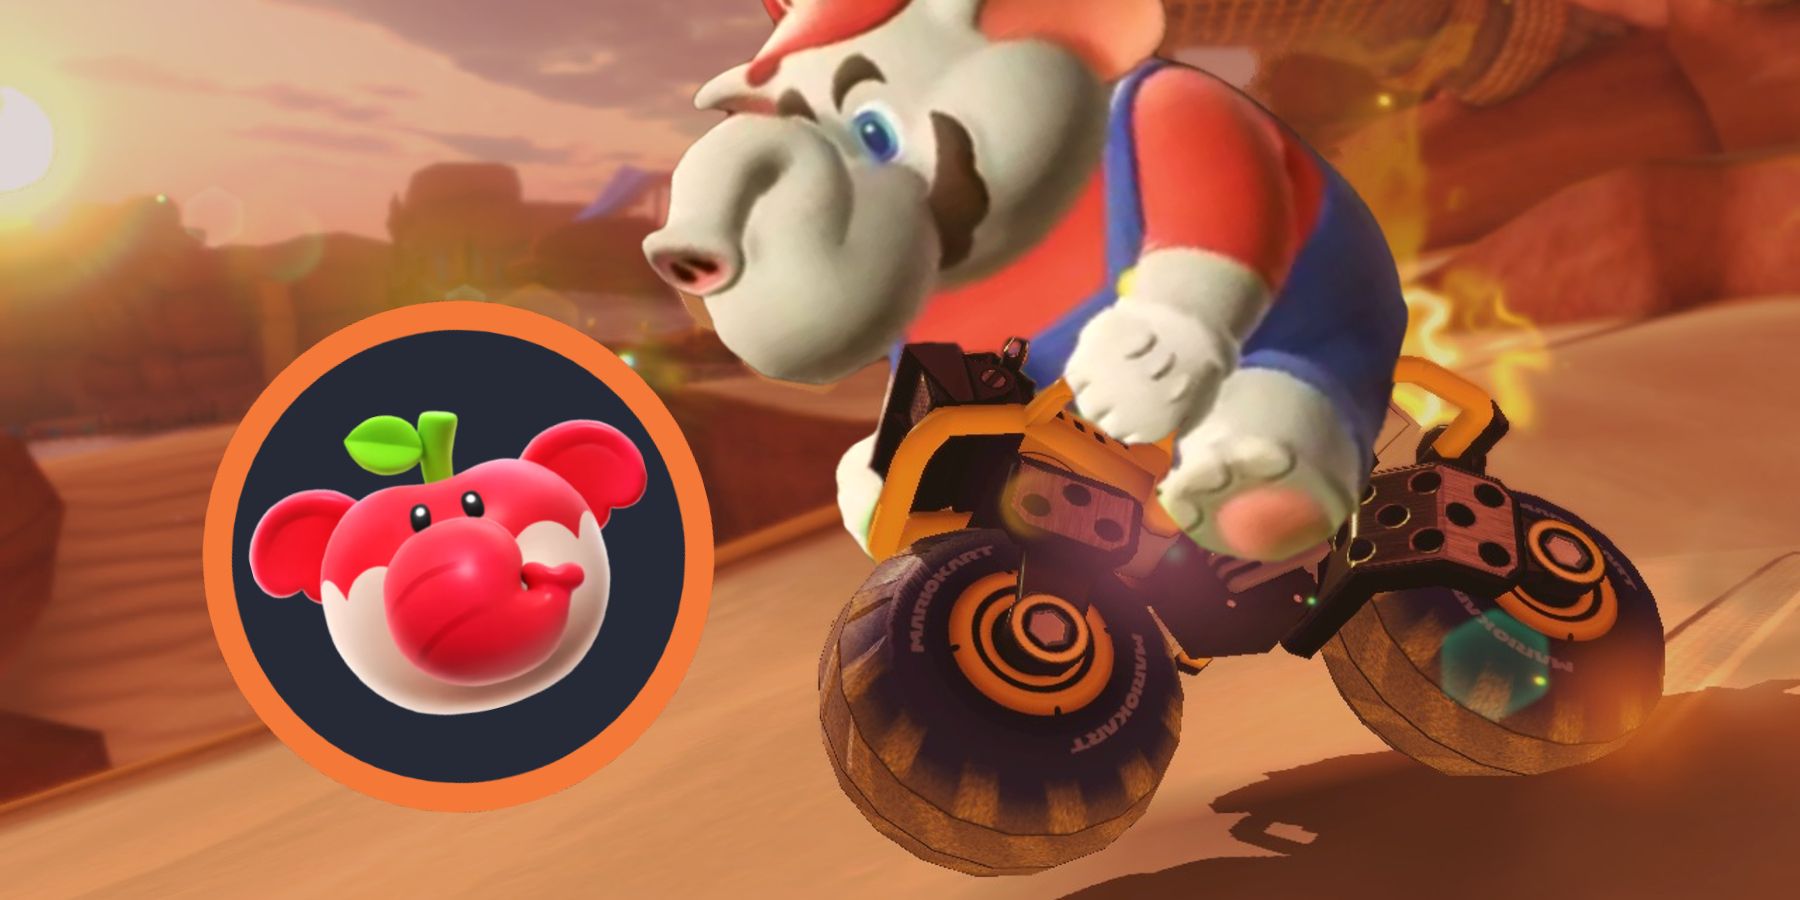 Mario Kart Elephant Fruit